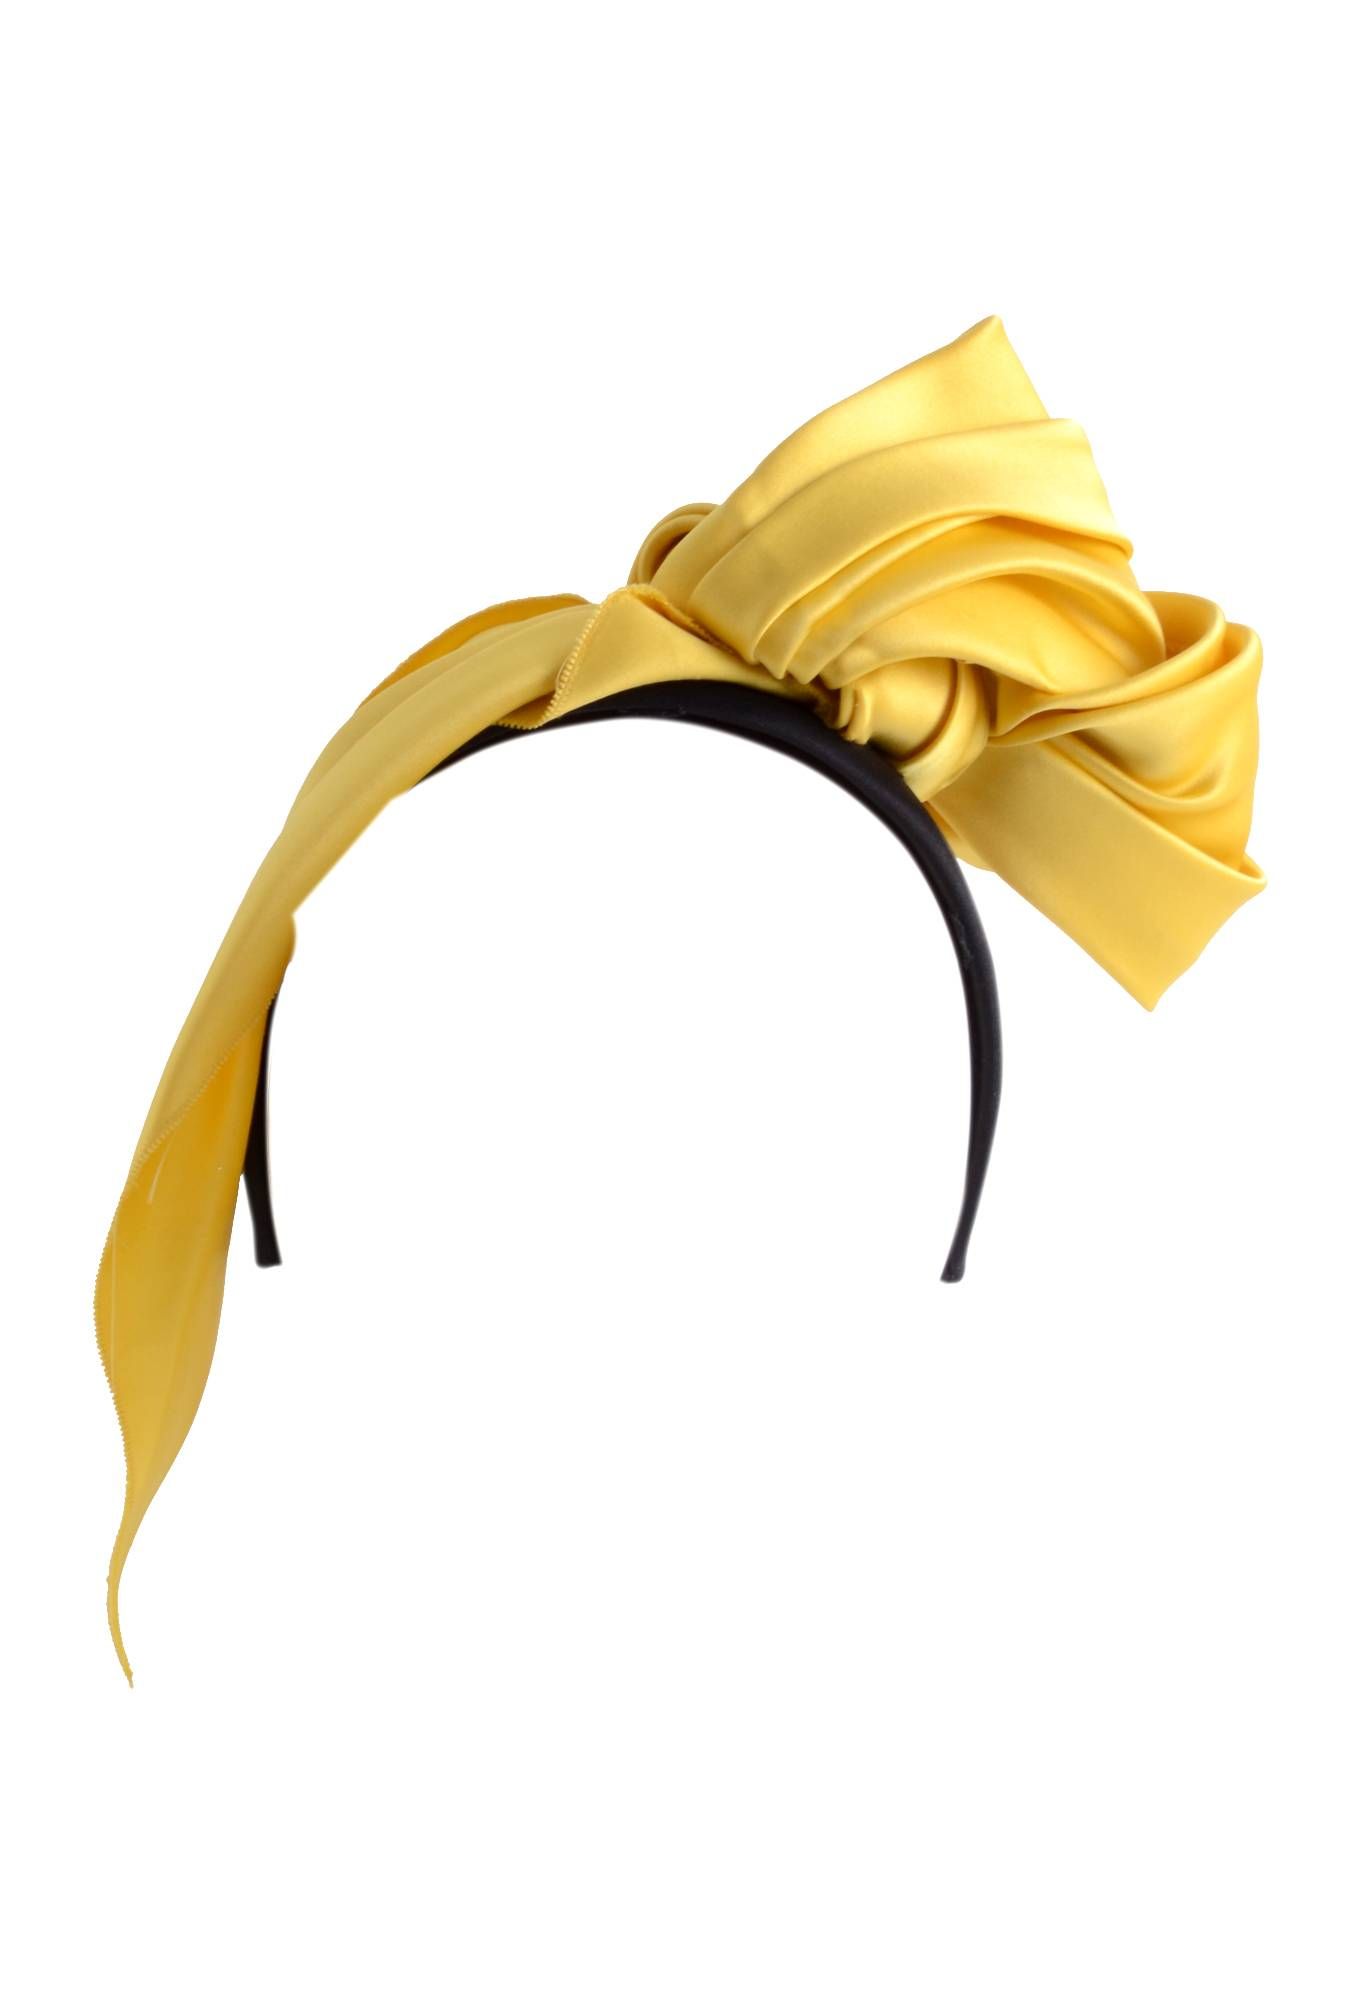 Dolce & Gabbana Women Bow Headband
IY110A FU1CK
90% Silk, 10% Acetate